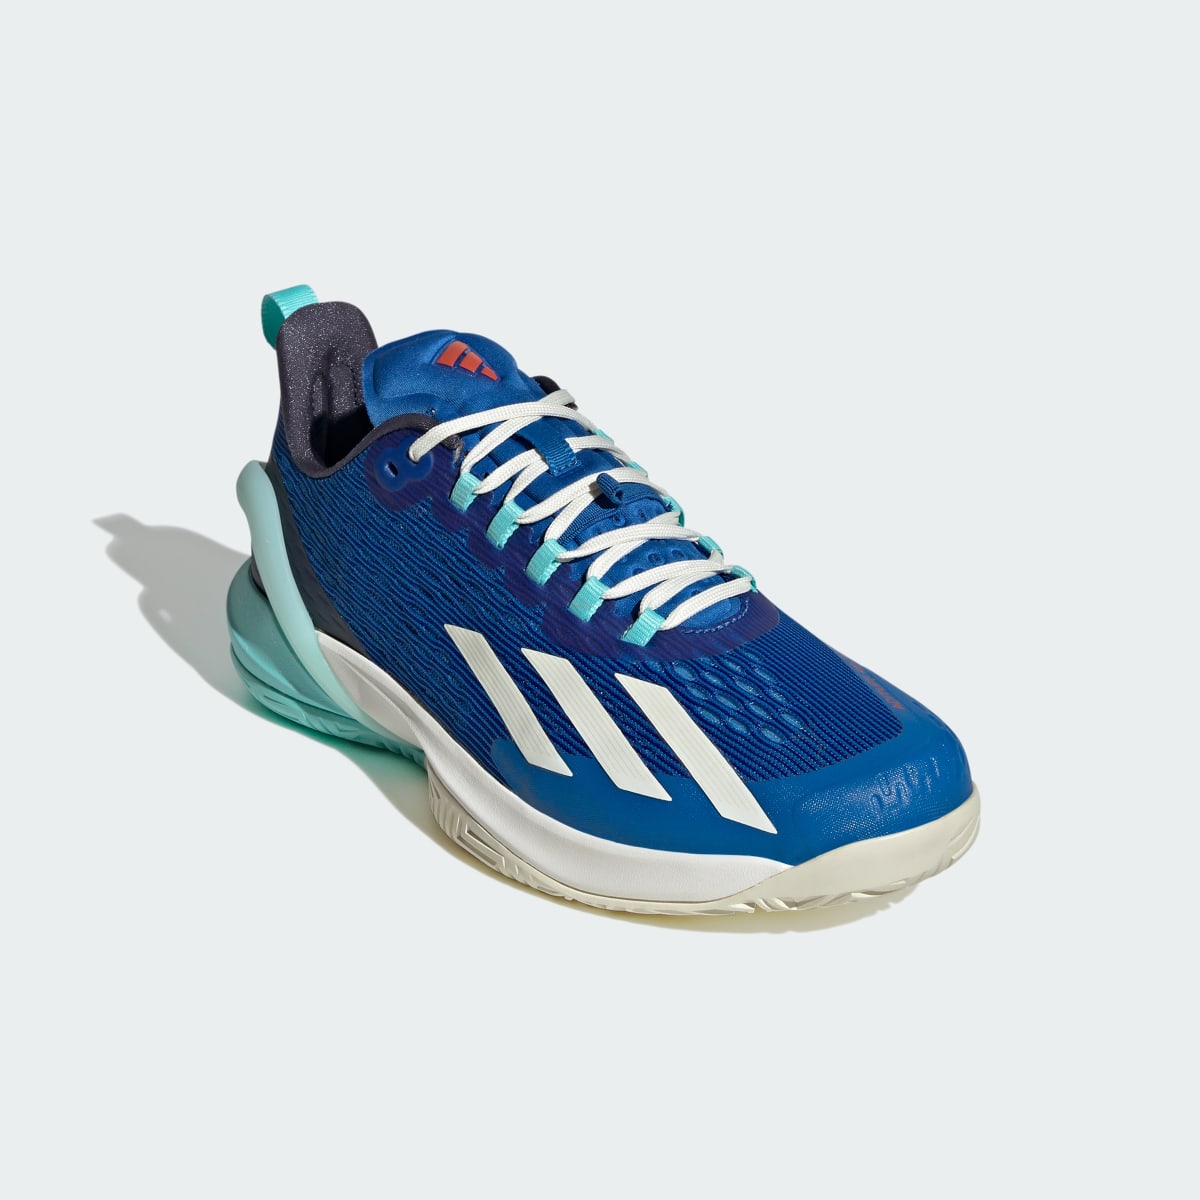 Adidas Adizero Cybersonic Tennis Shoes. 5